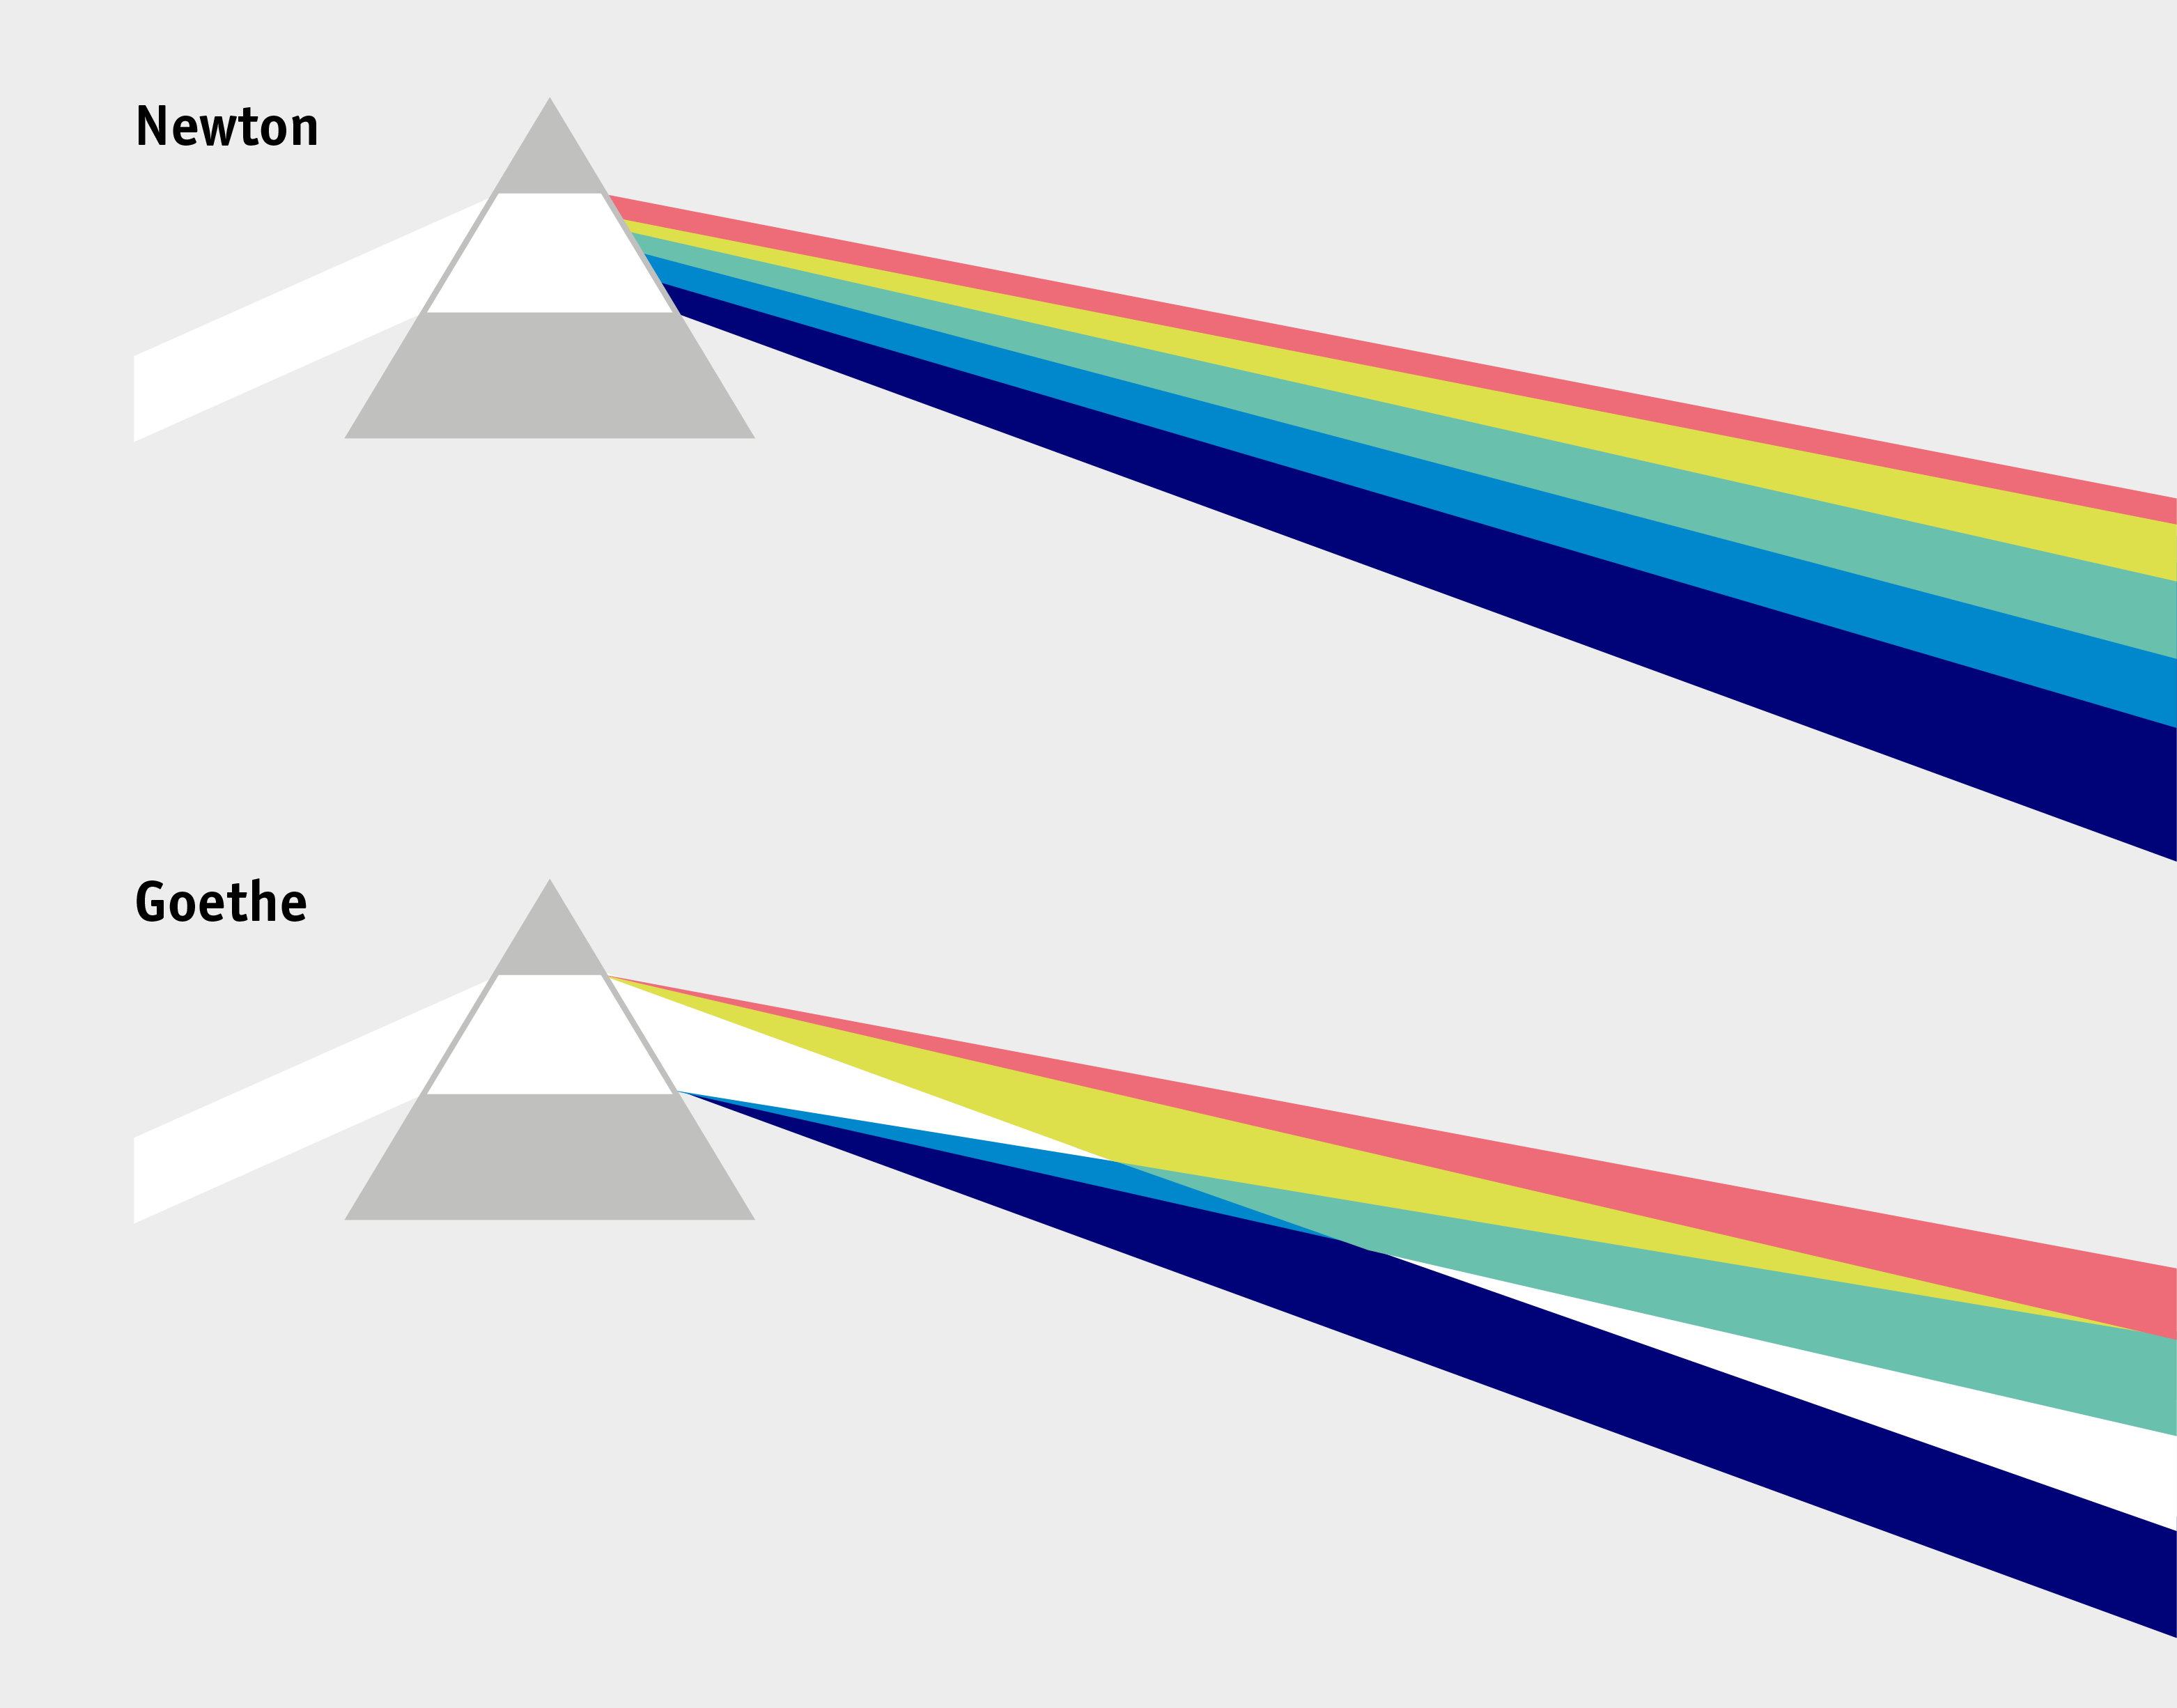 Farbsystem von Newton und Goethe im Vergleich